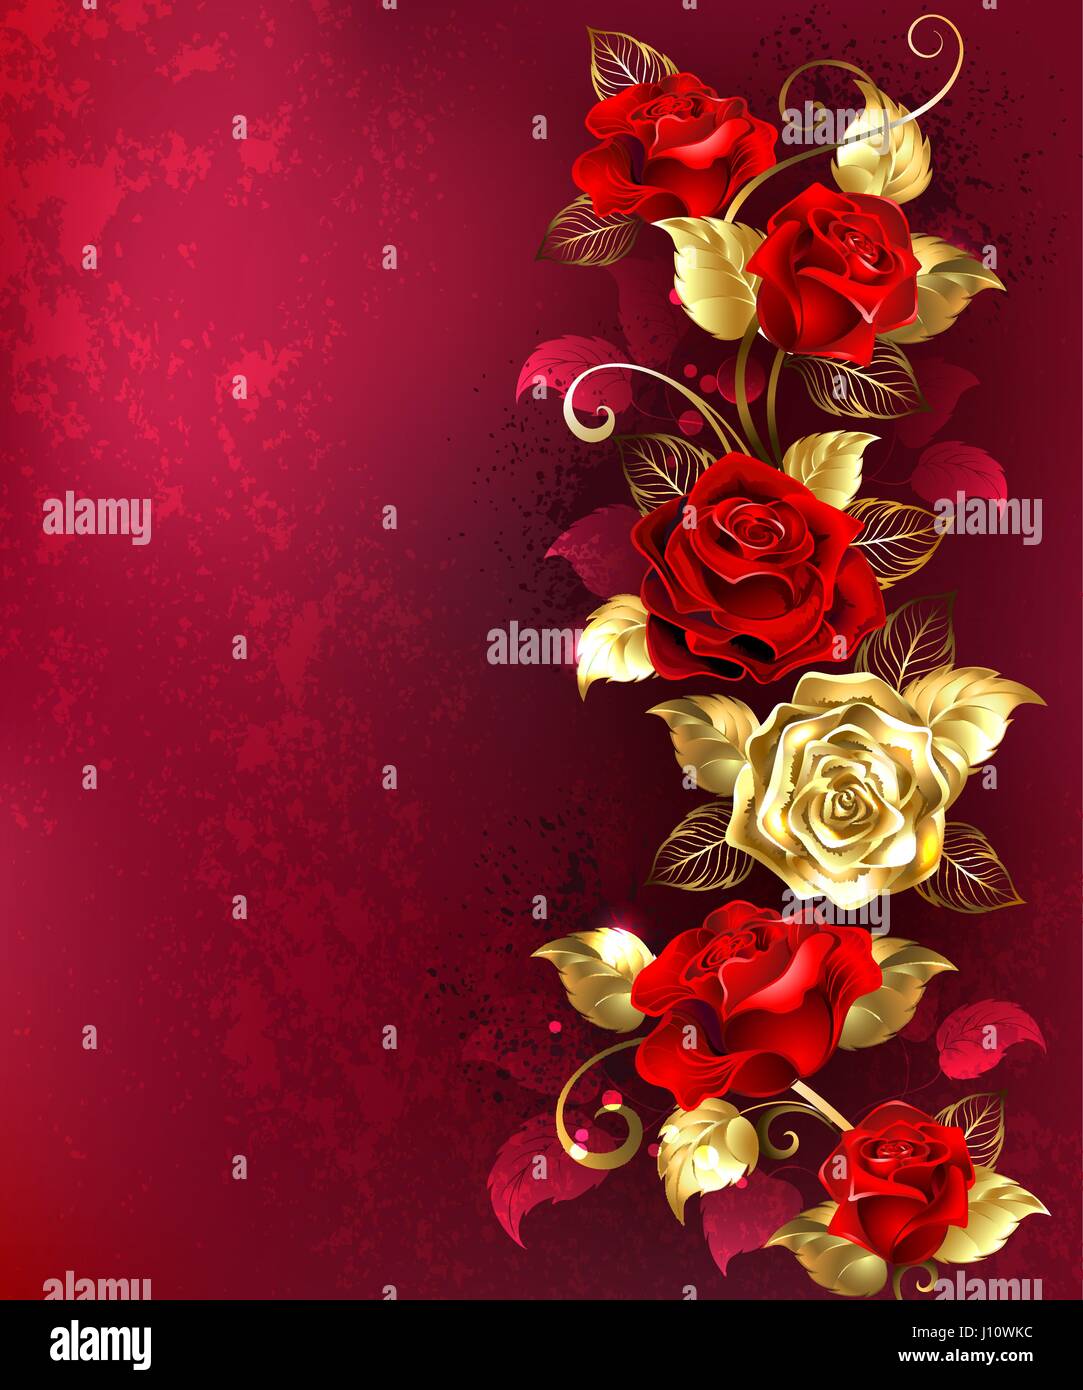 Vertikale Zusammensetzung von rot und gold Schmuck Rosen mit Blattgold auf einen roten strukturierten Hintergrund. Design mit goldenen Rosen. Stock Vektor